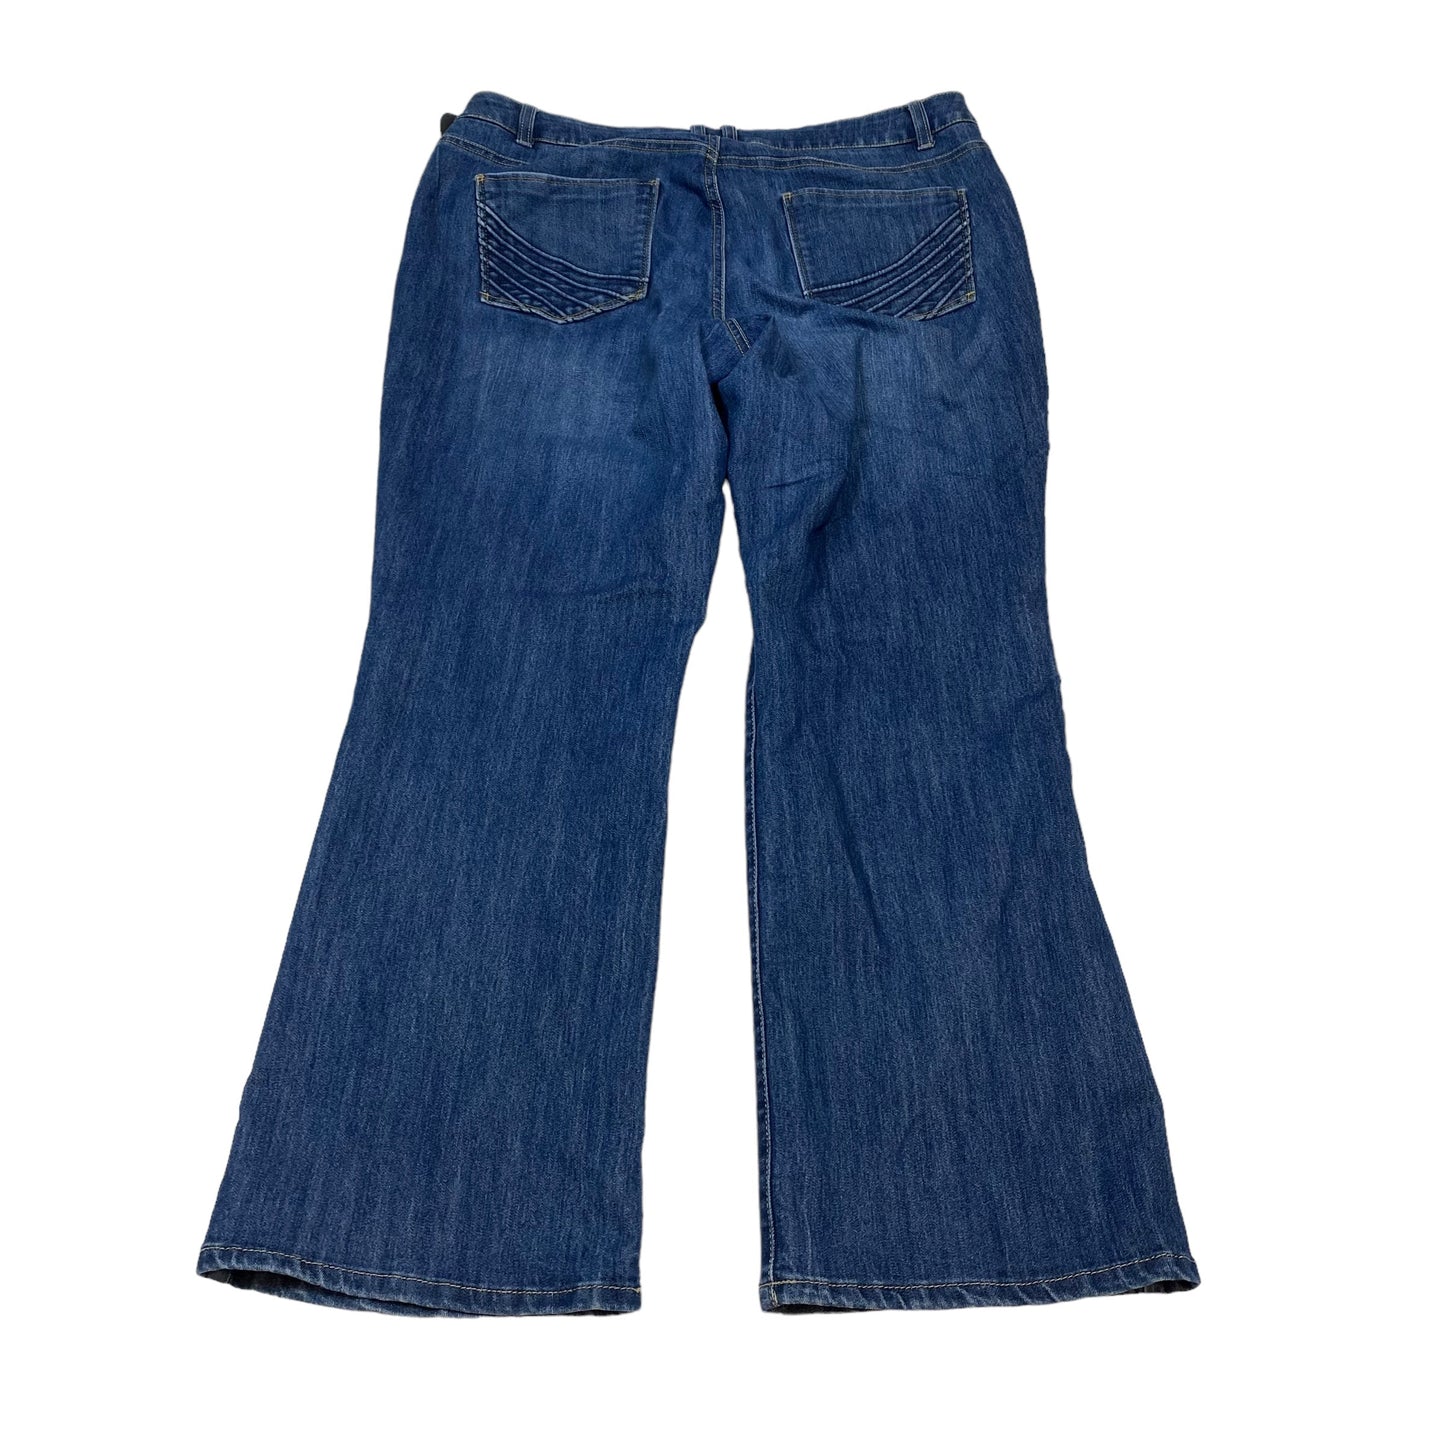 Blue Denim Jeans Boot Cut Sonoma, Size 16